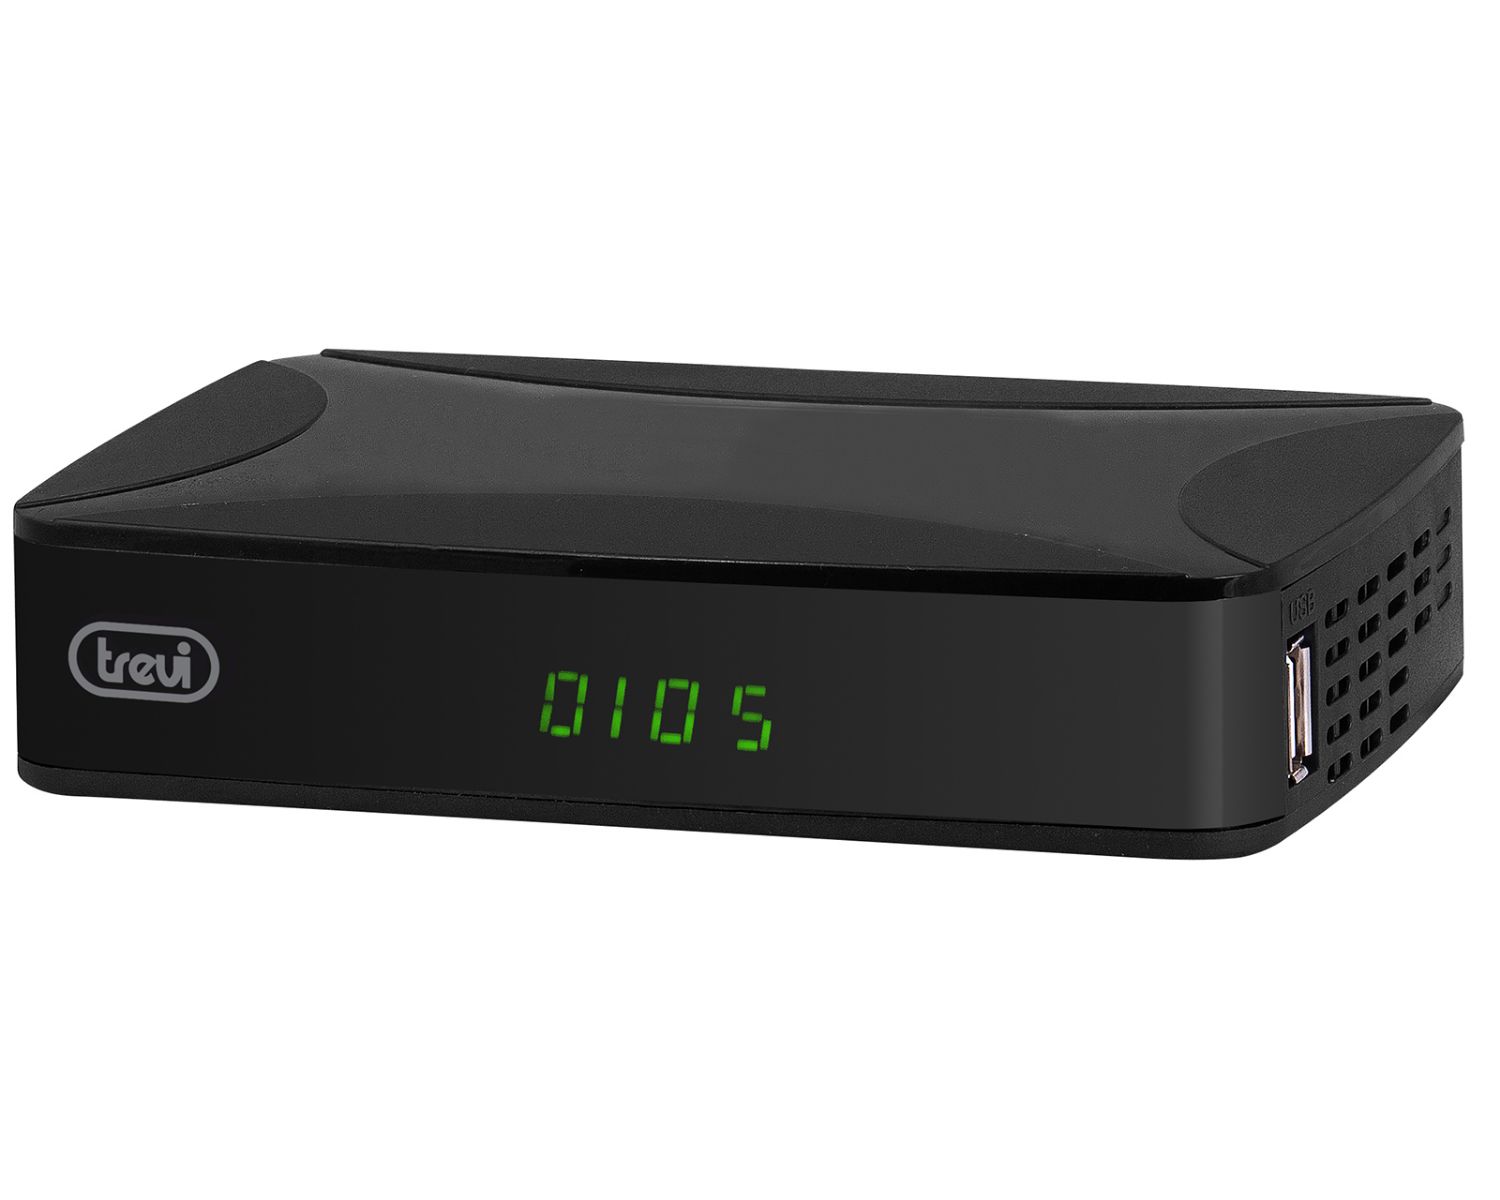 03368 - Decodificador TDT Trevi 4:3 16:9 FHD DVB-T2 USB 2.0 HDMI Negro (03368)